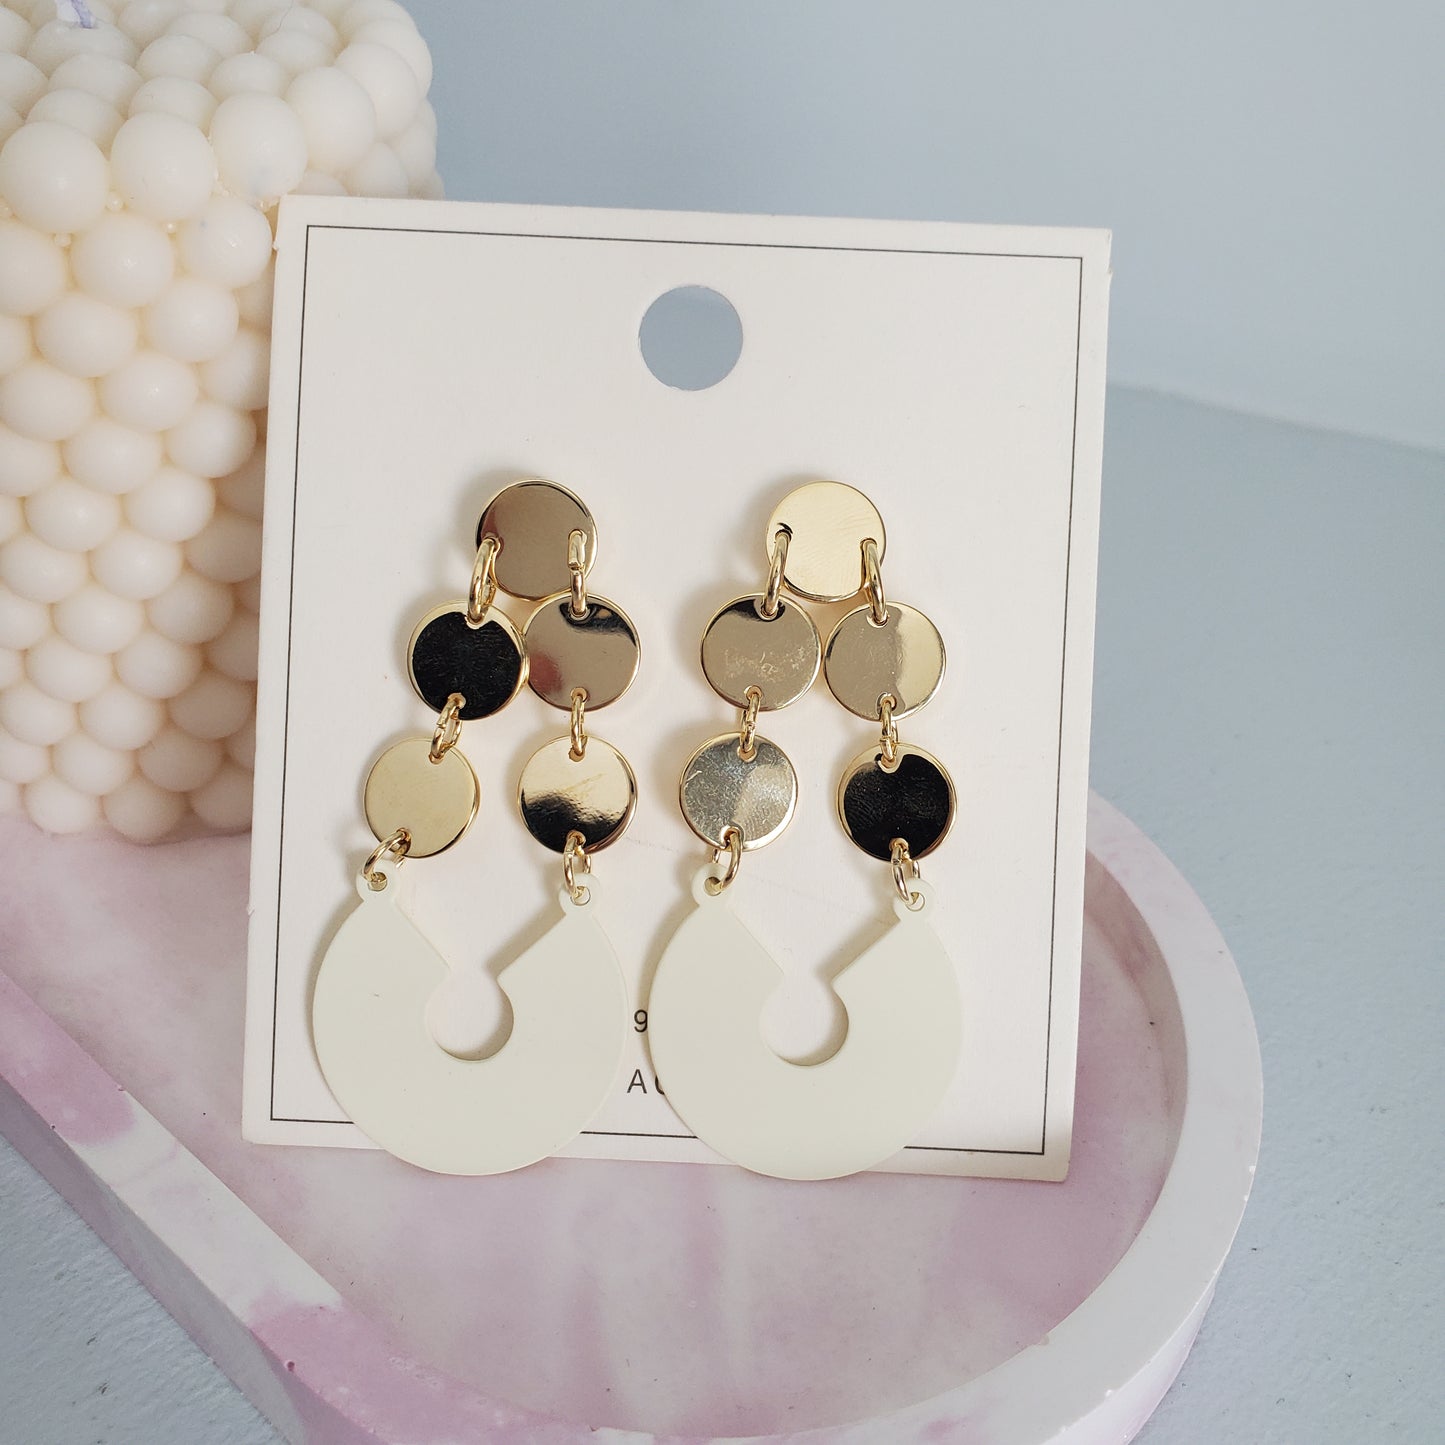 Minimlist earrings